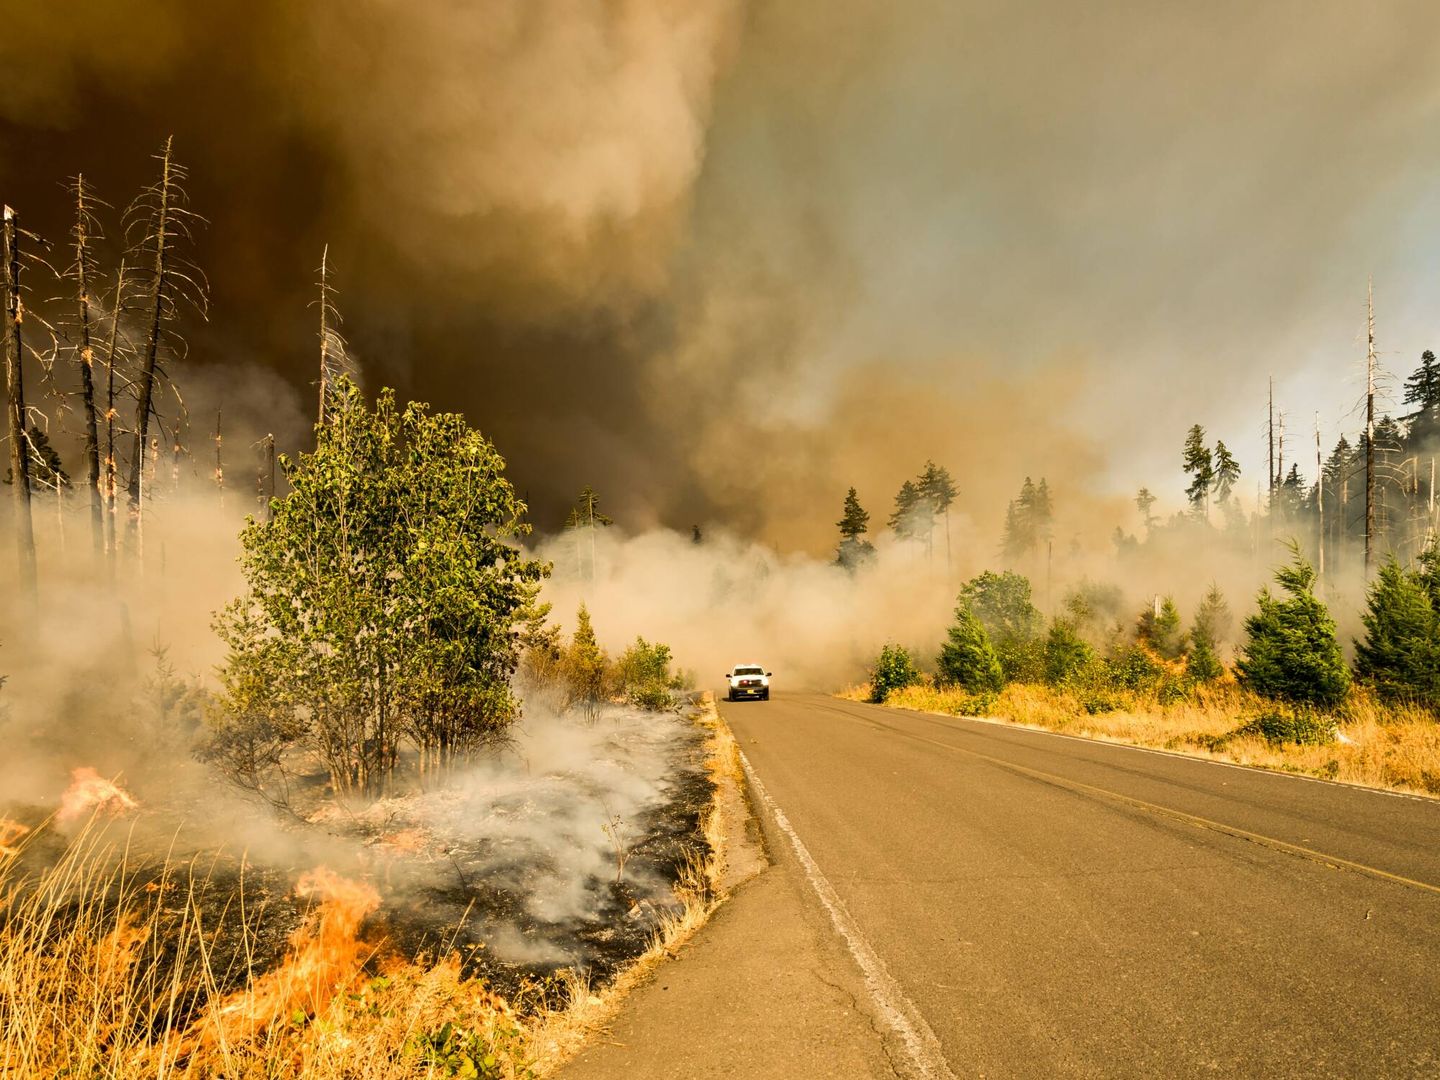 Los incendios forestales cada vez más frecuentes son reflejo de la crisis climática. (Unsplash)